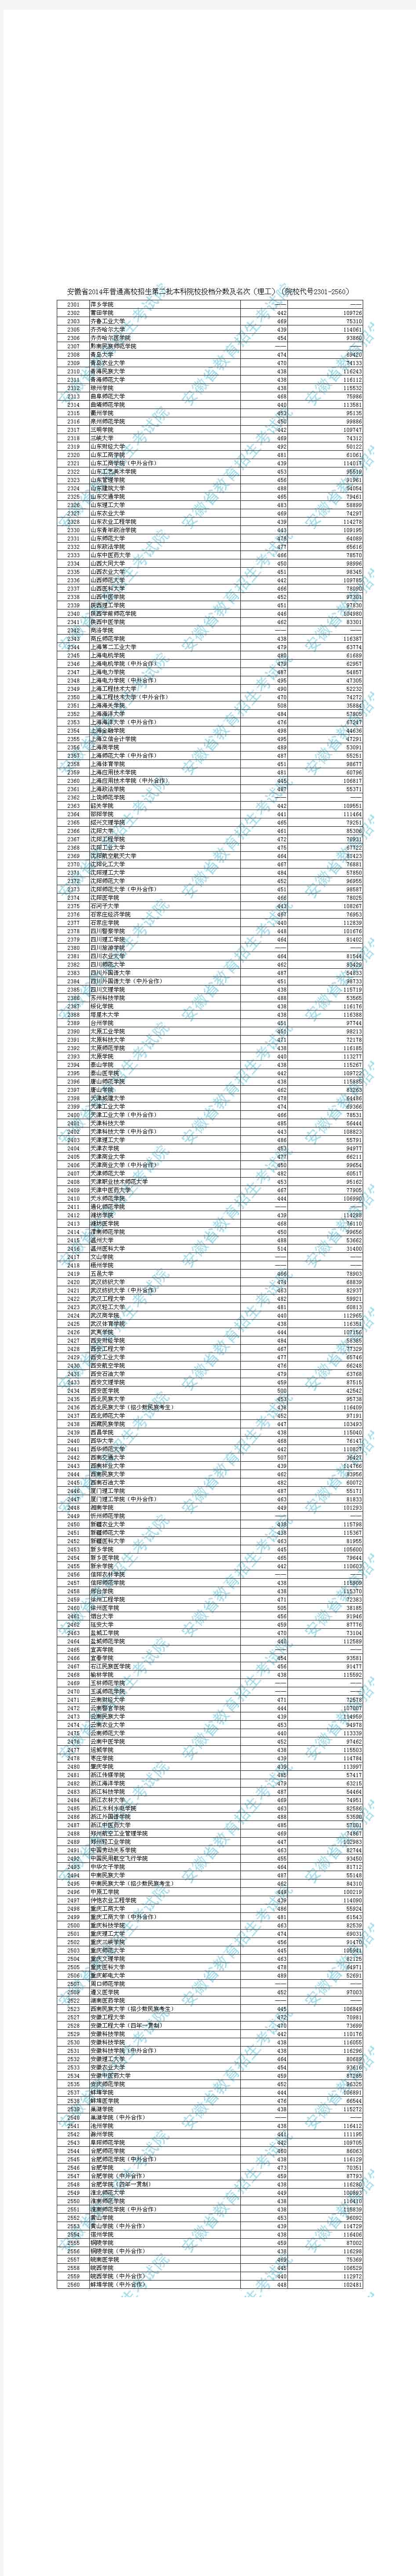 安徽省2014年普通高校招生第二批本科院校投档分数及名次(理工)